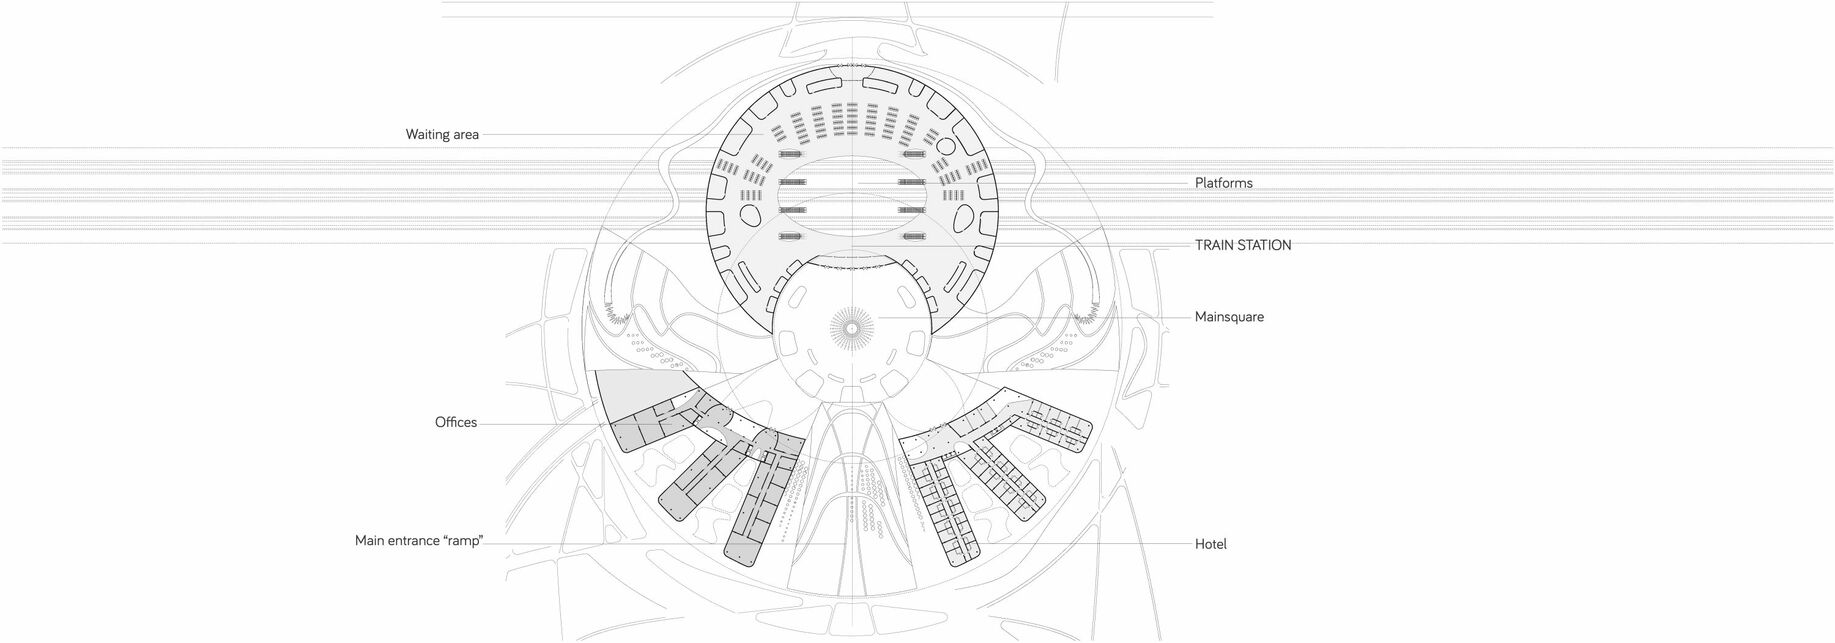 Második emelet alaprajz, Xian új pályaudvara, nemzetközi tervpályázat. Építészet: LAB5 architects